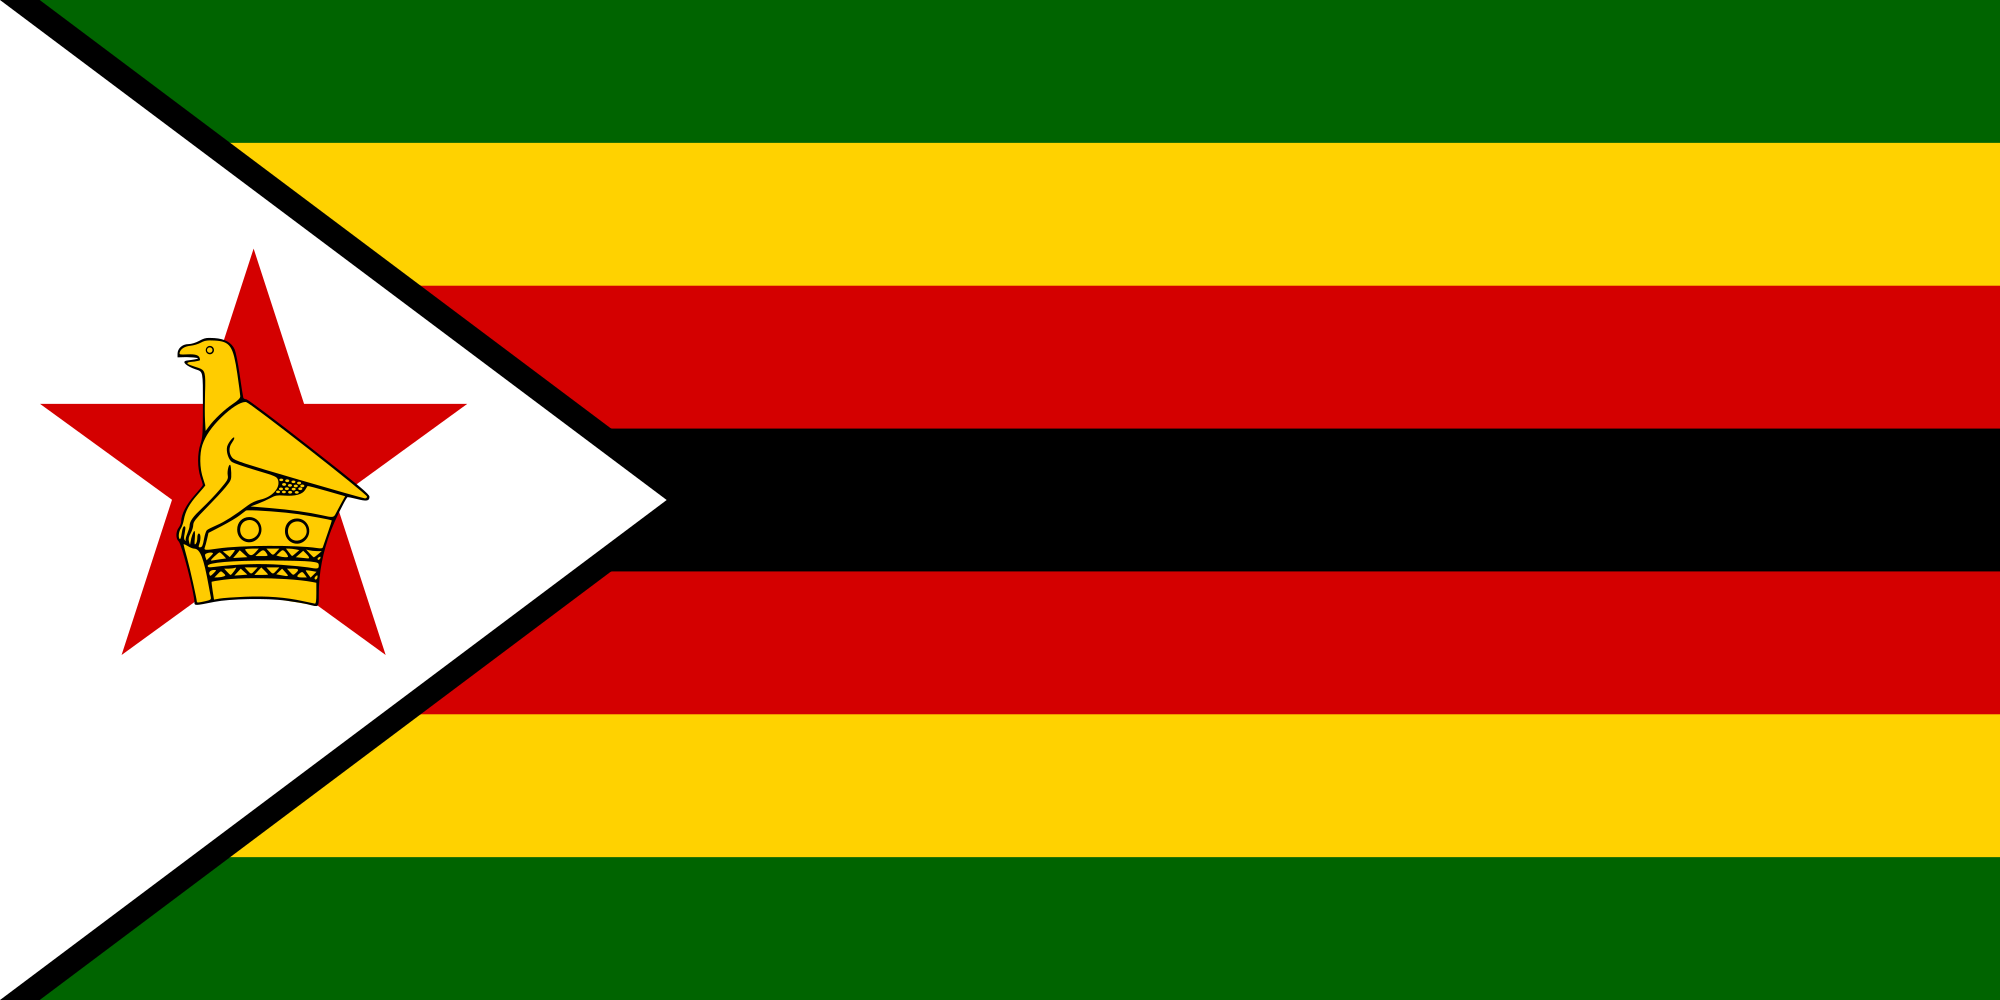 Zimbabwe: Brussels Businesses Eye Zim Prospects